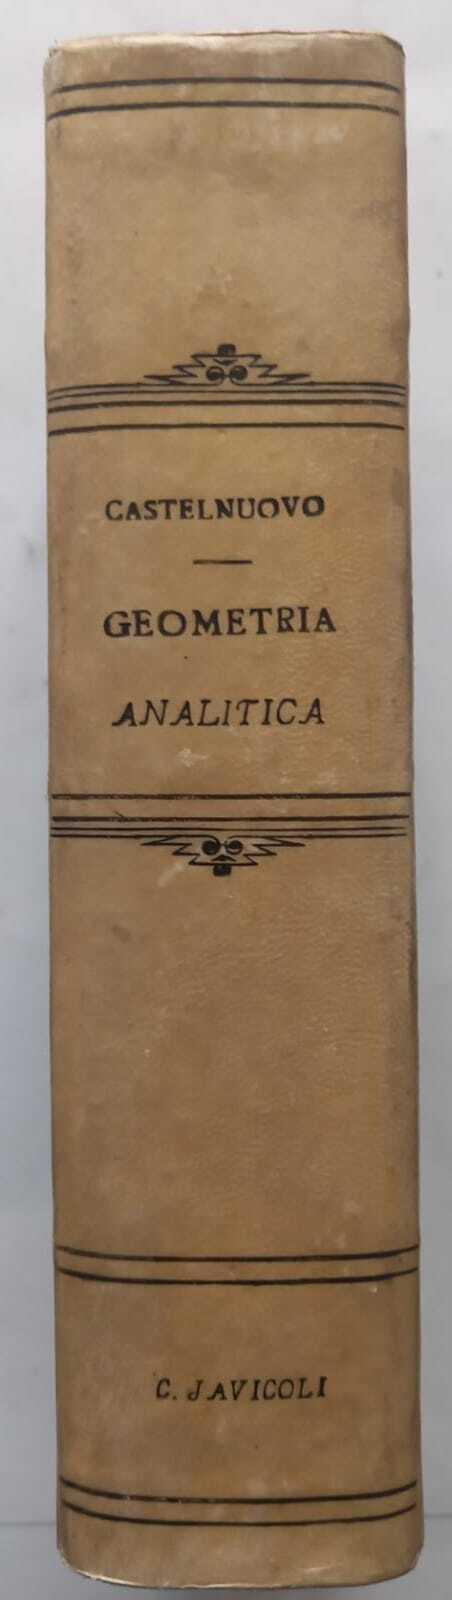 Lezioni di geometria analitica - Castelnuovo - copertina